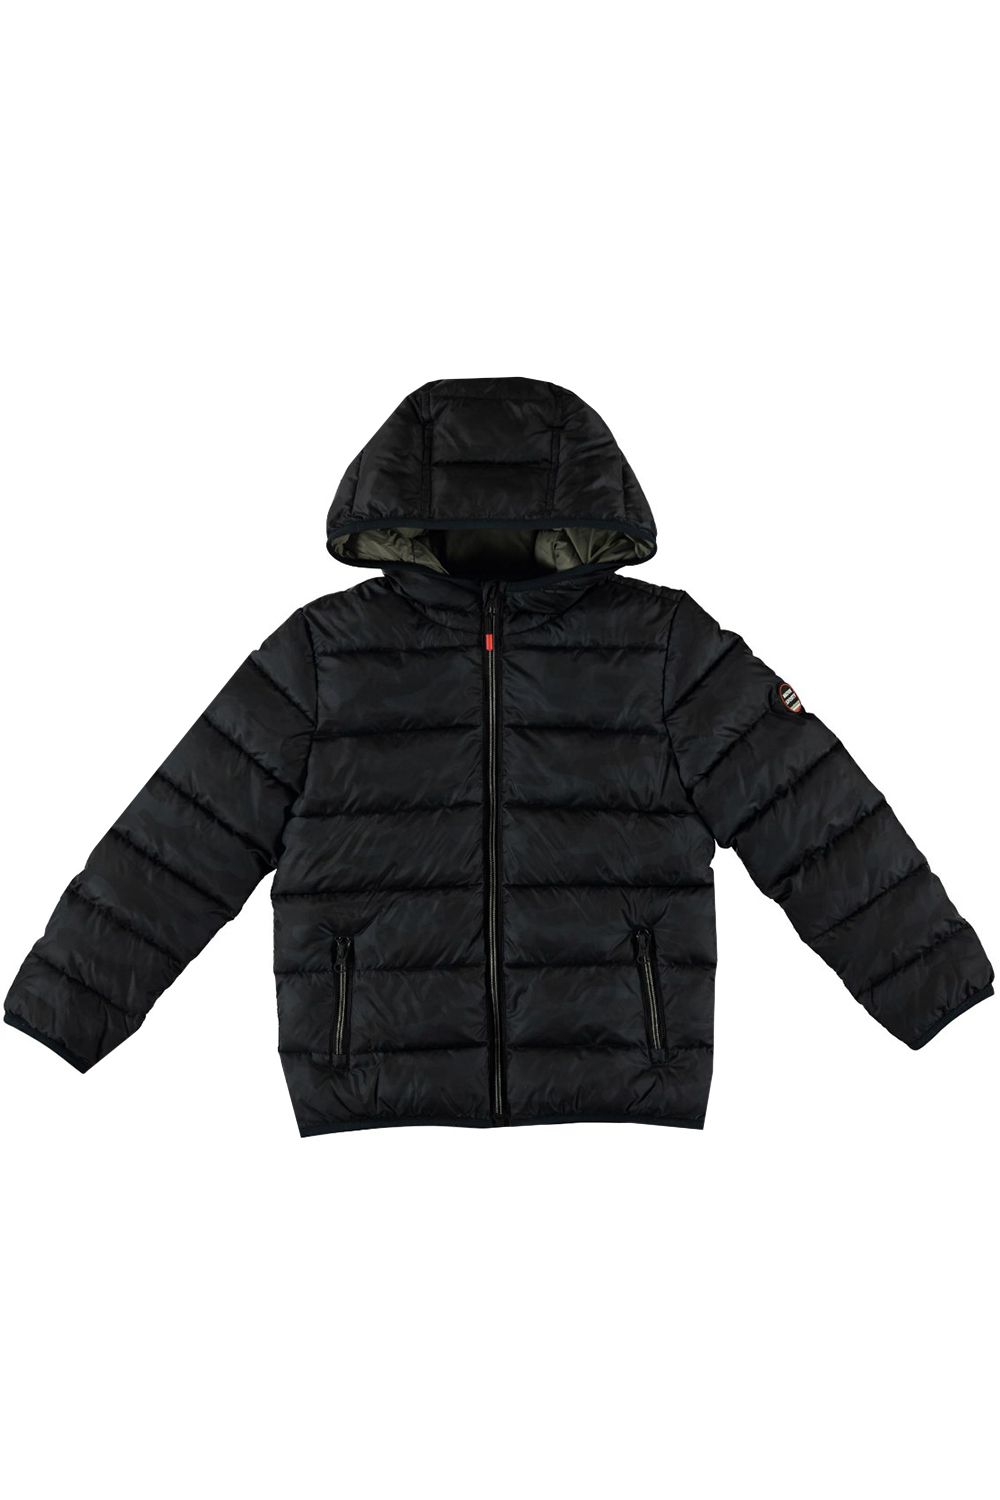 Куртка+чехол Mayoral, размер 160, цвет черный 7.471/22 Куртка+чехол - фото 1